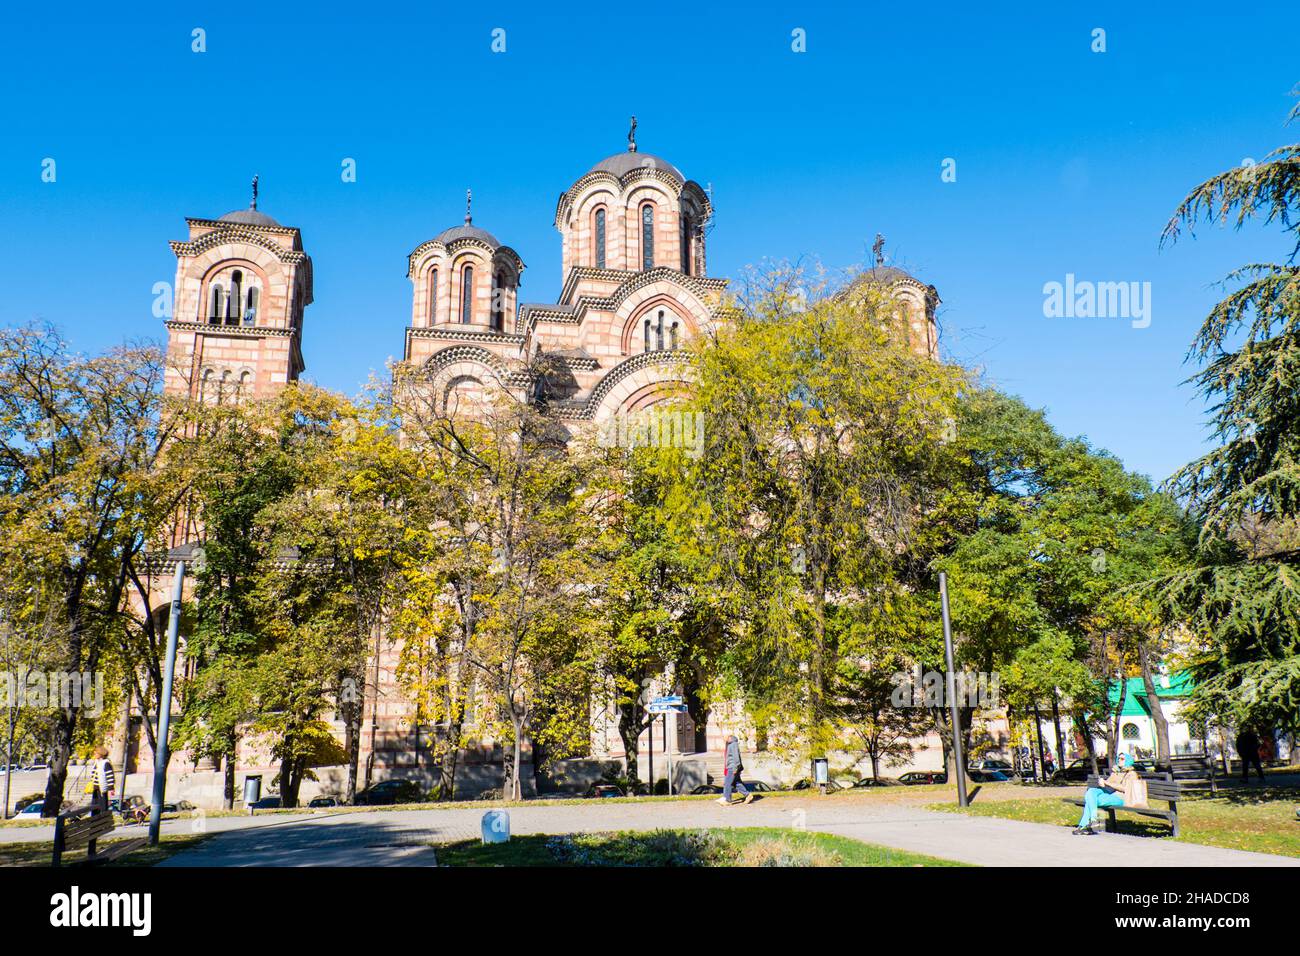 La iglesia de San Marcos, el parque Tasmajdan, Belgrado, Serbia Foto de stock